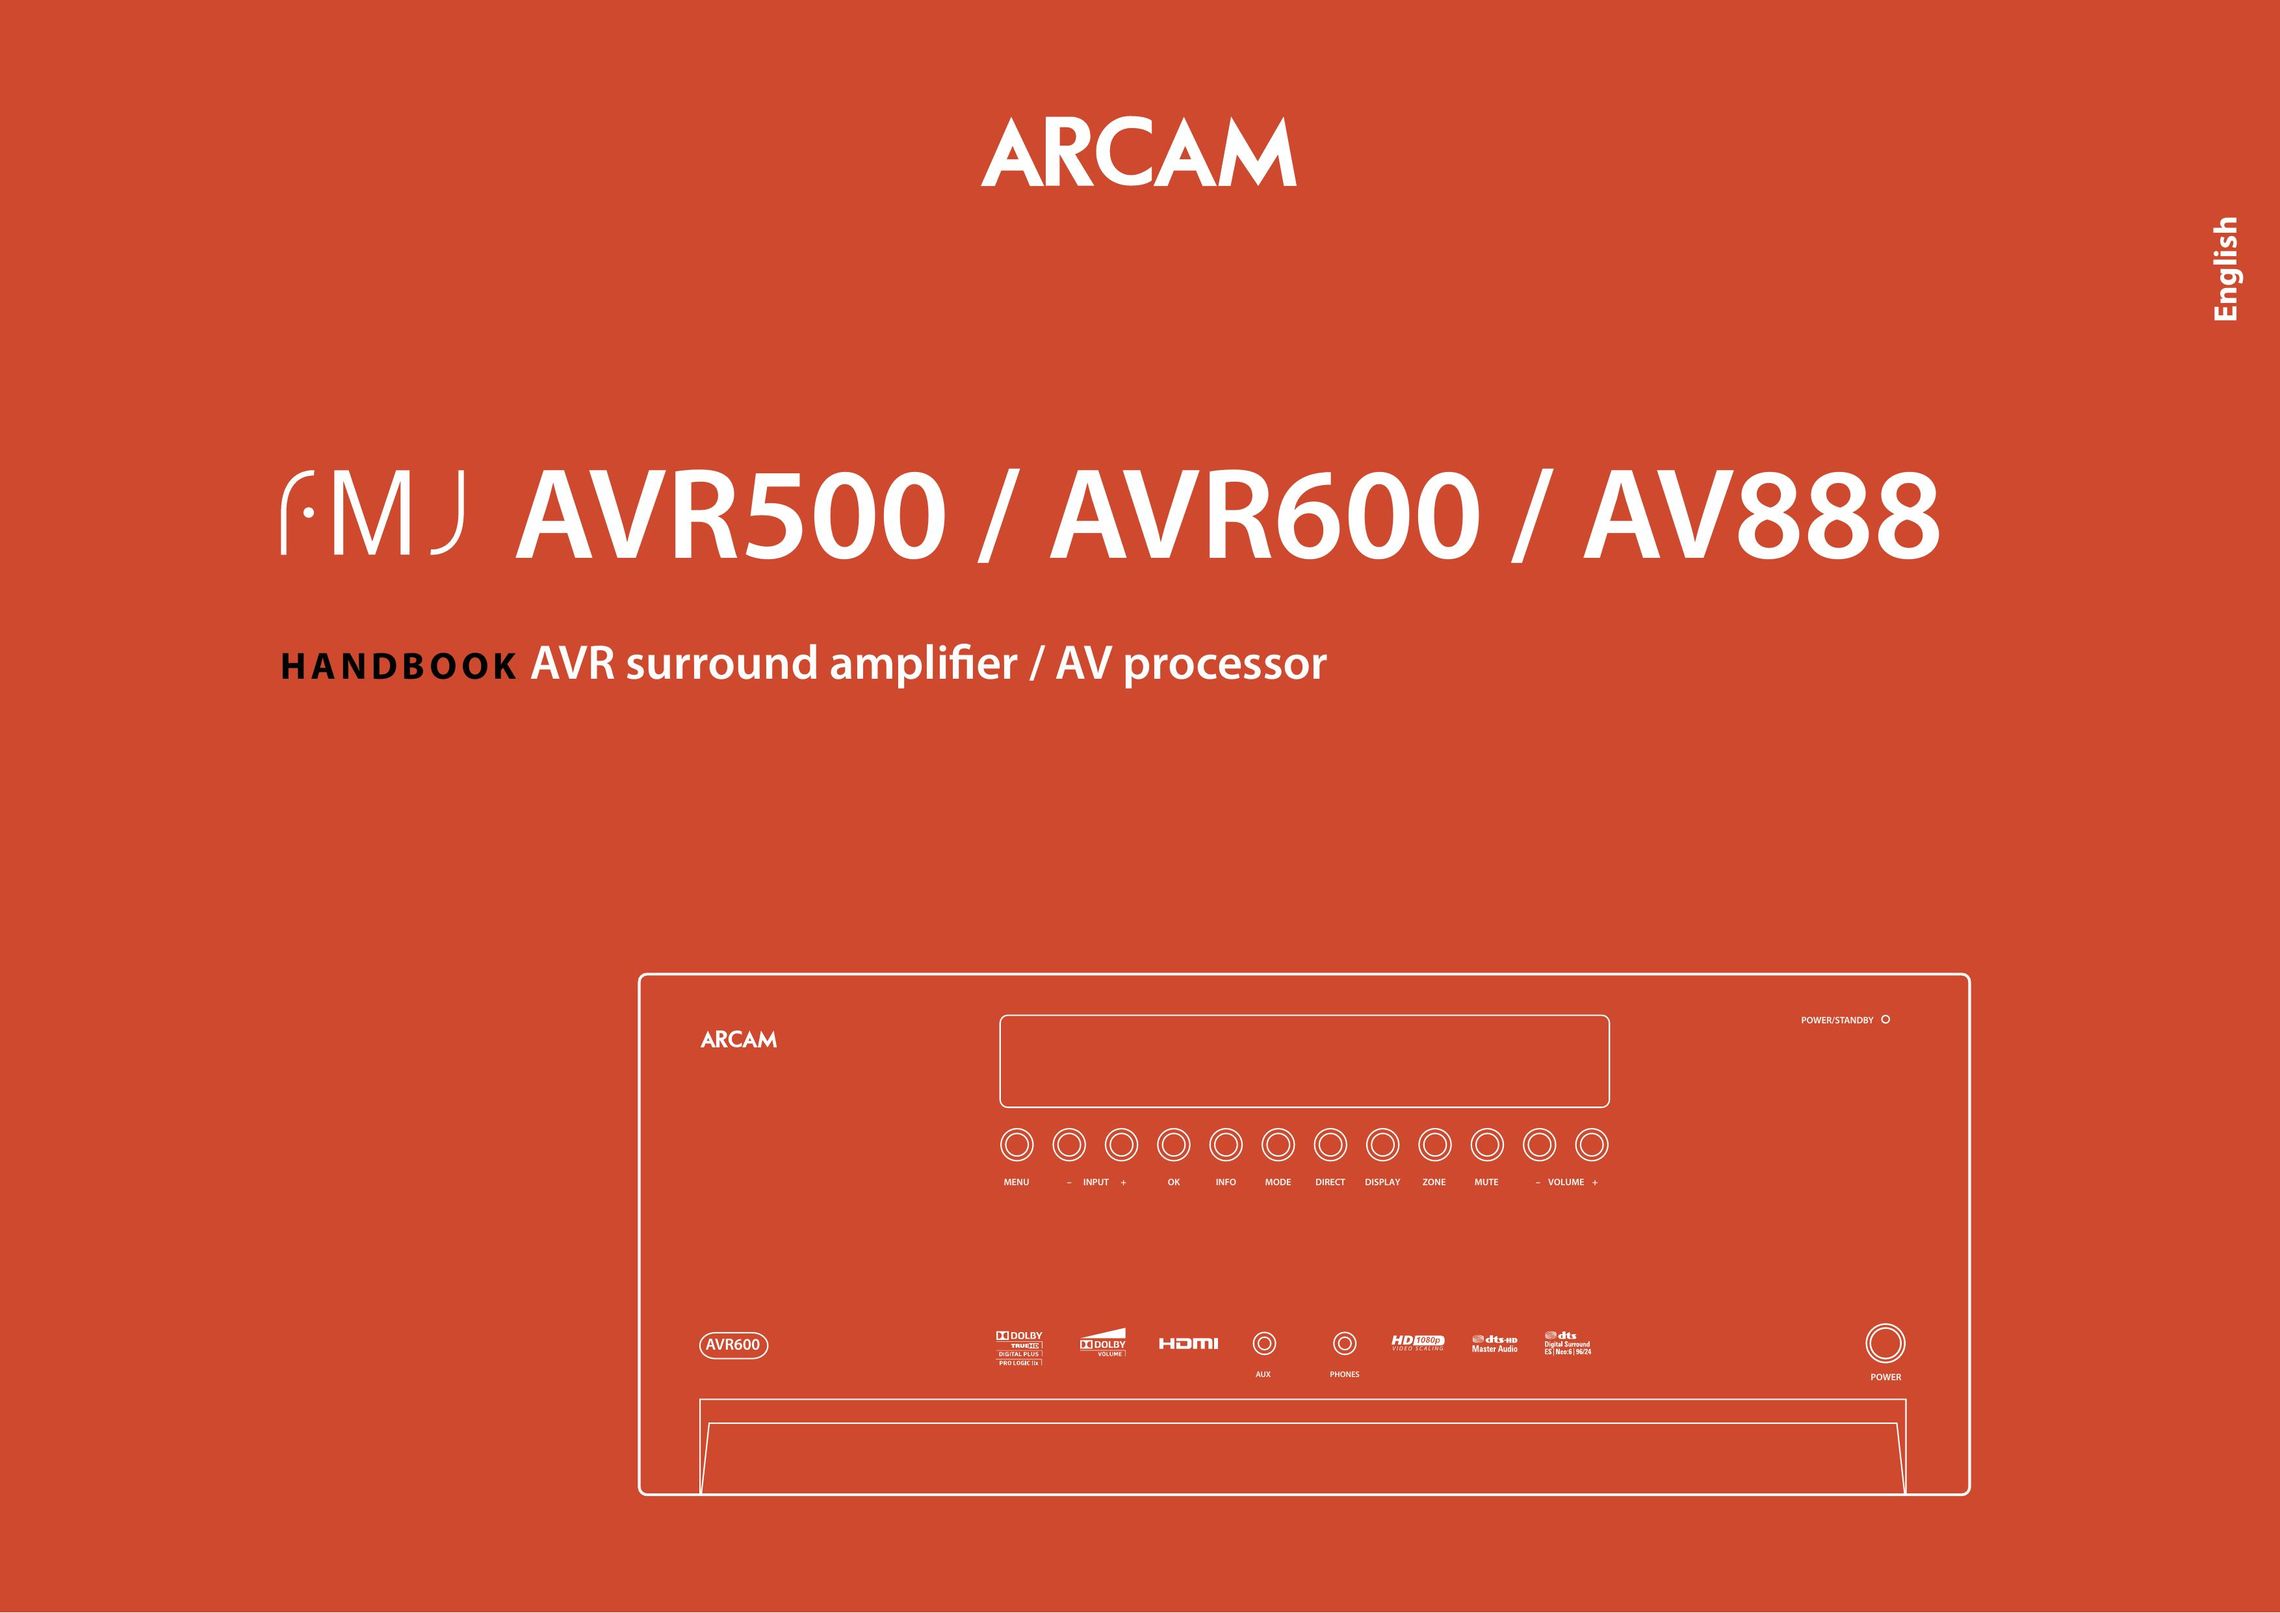 Arcam AV888 Stereo Amplifier User Manual